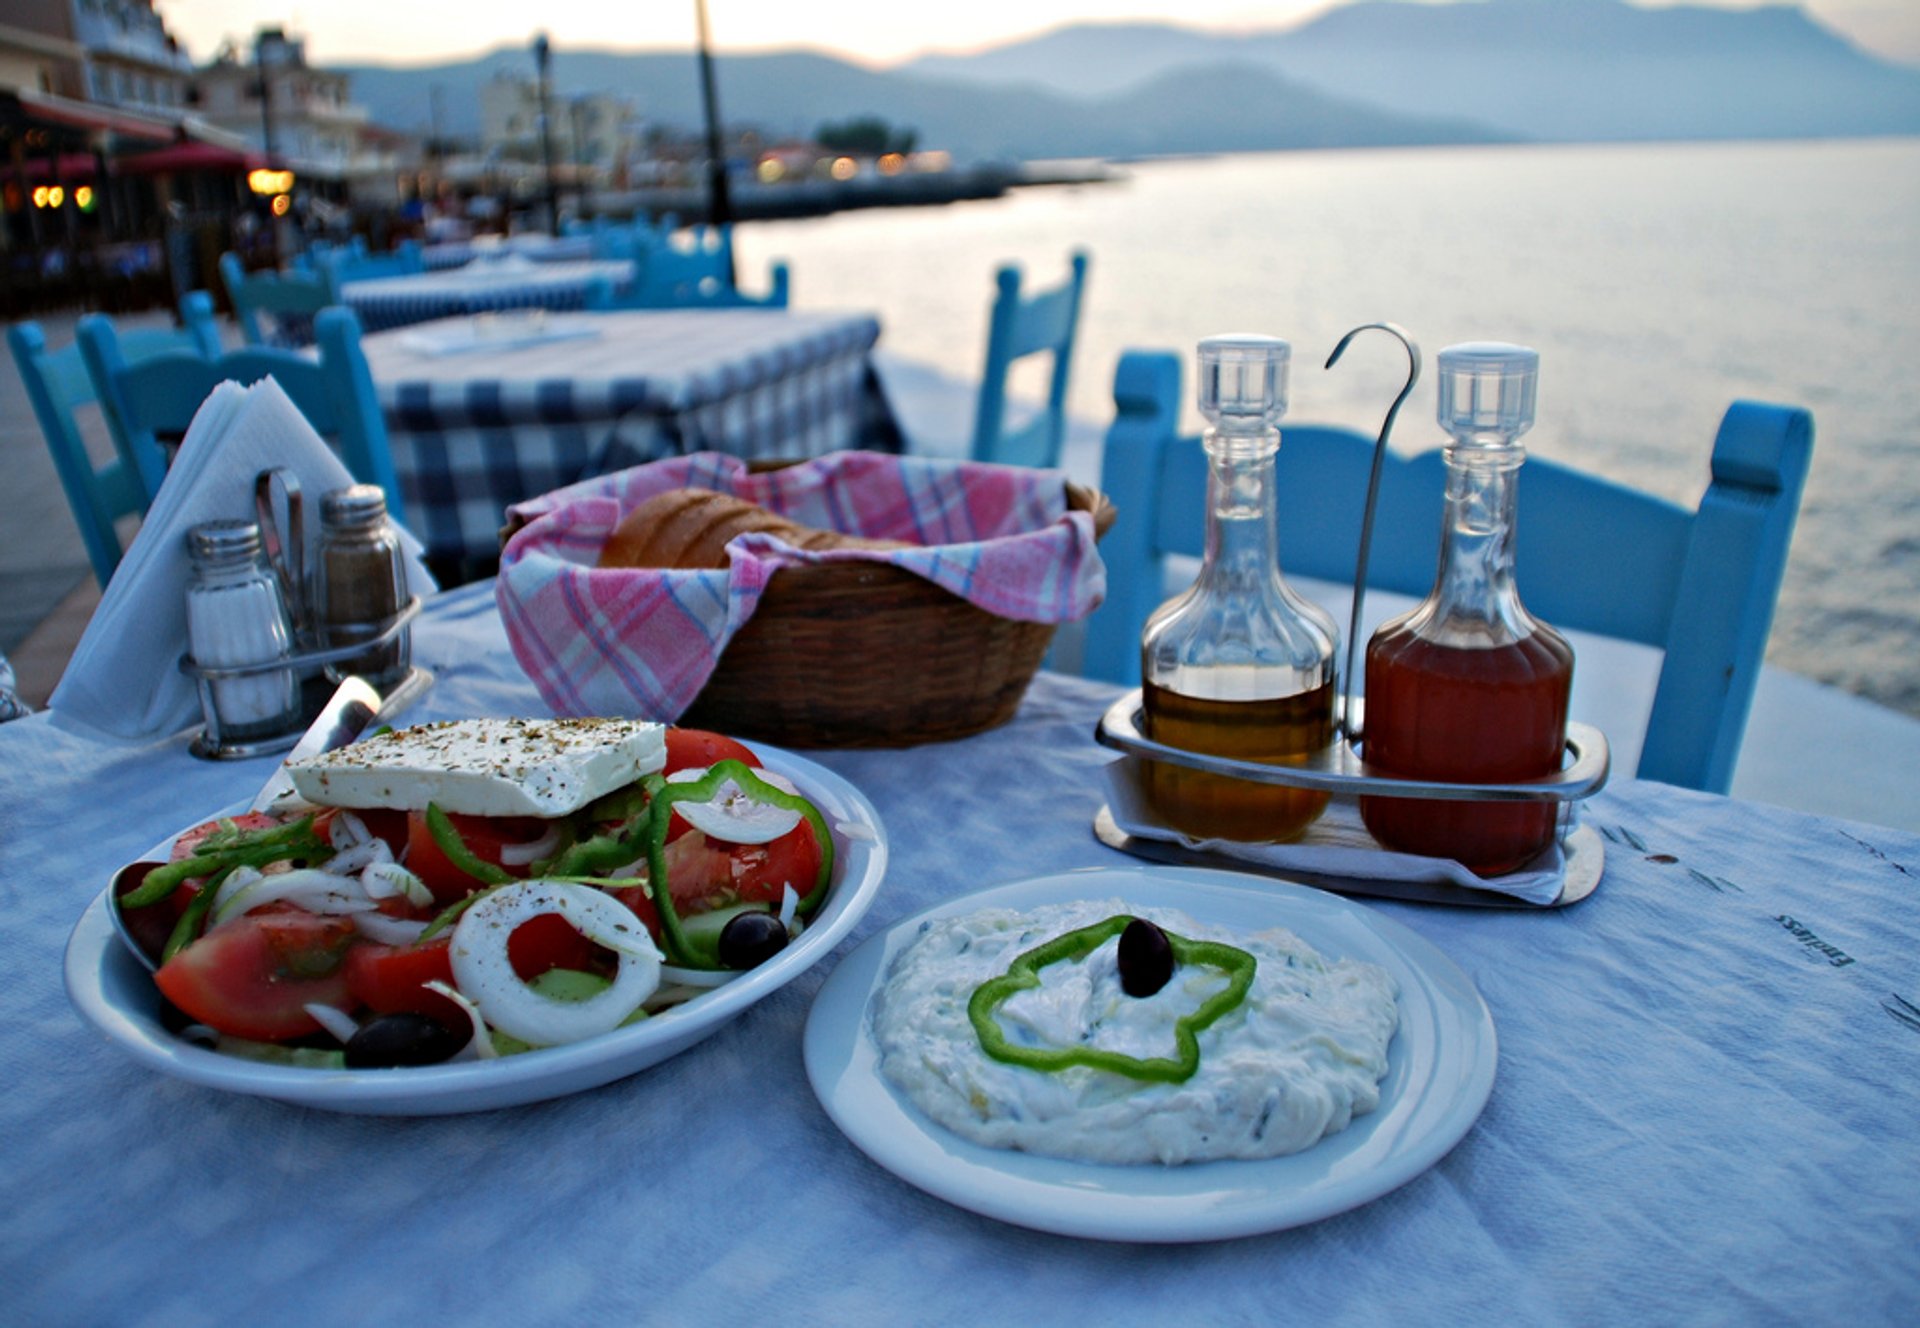 Salade grecque (Horiatiki Salata)